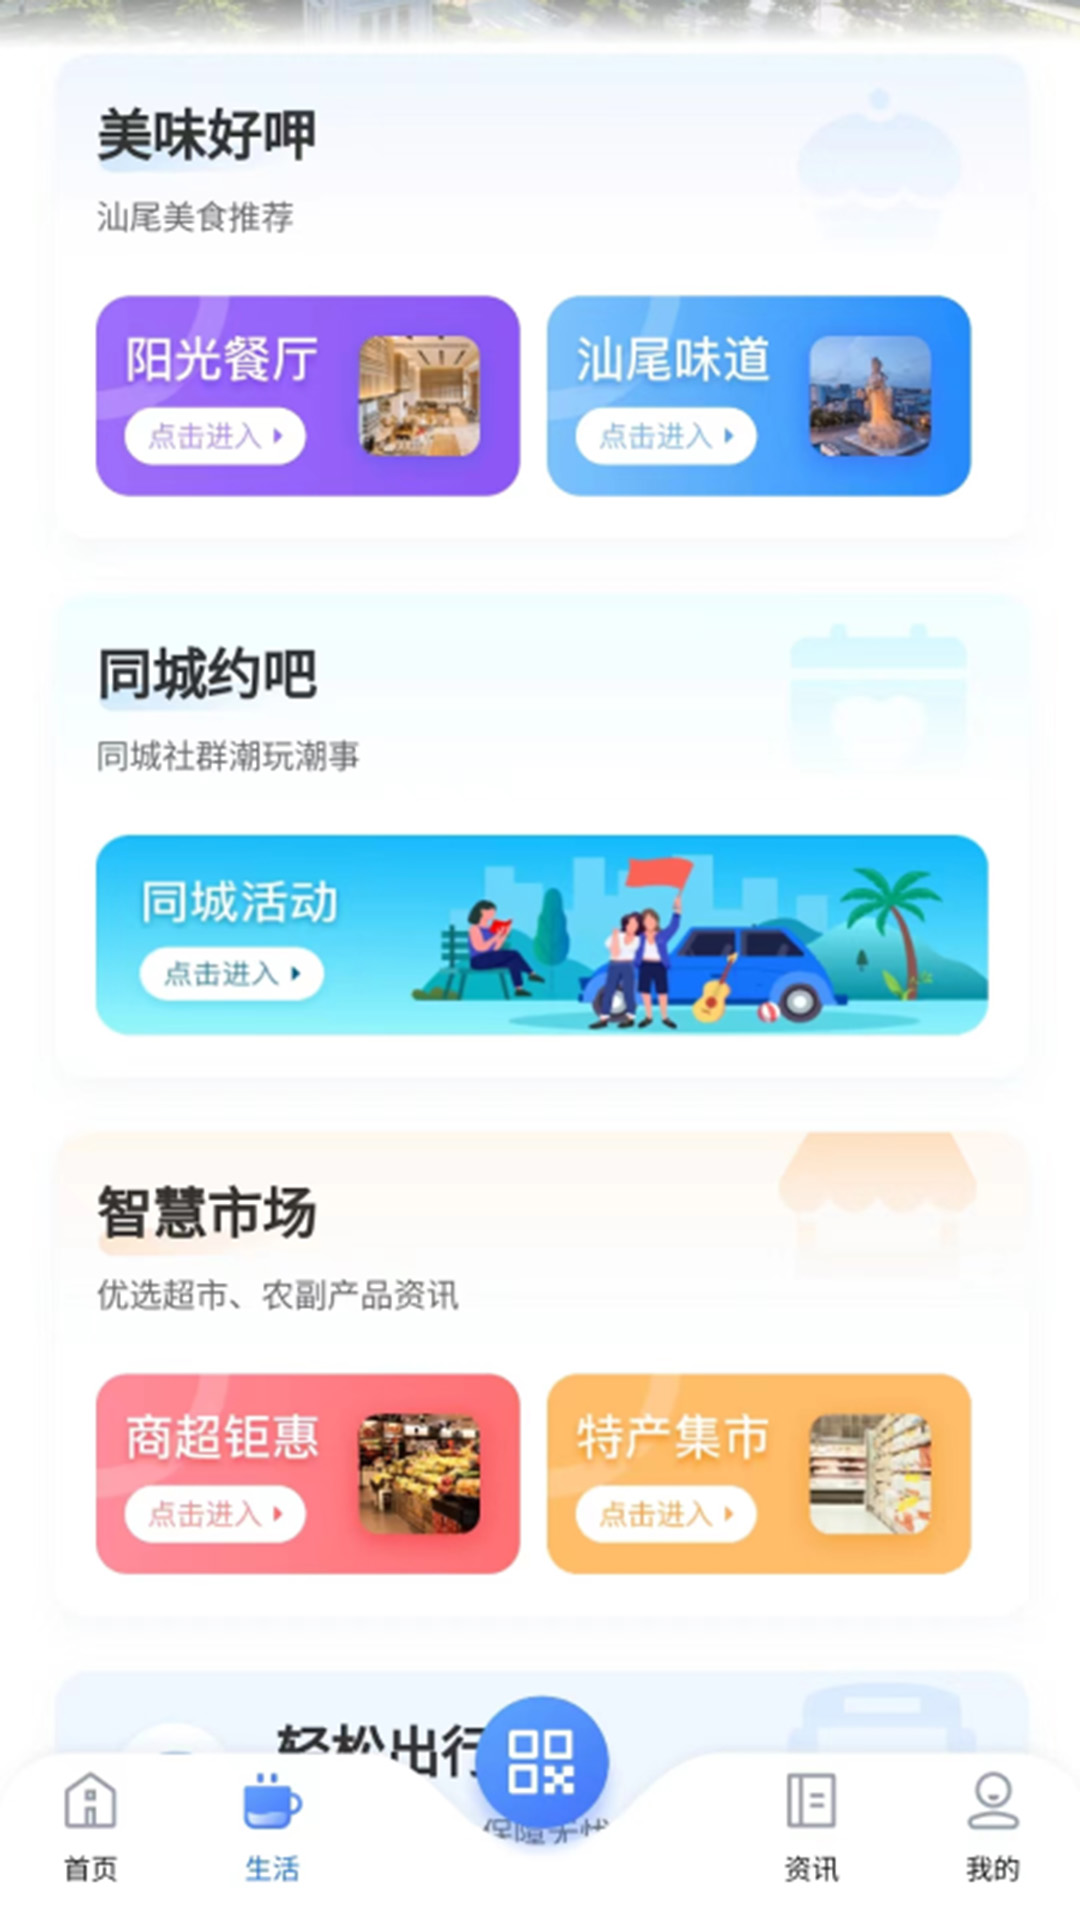 i汕尾app下载,i汕尾app官方版 v1.0.21